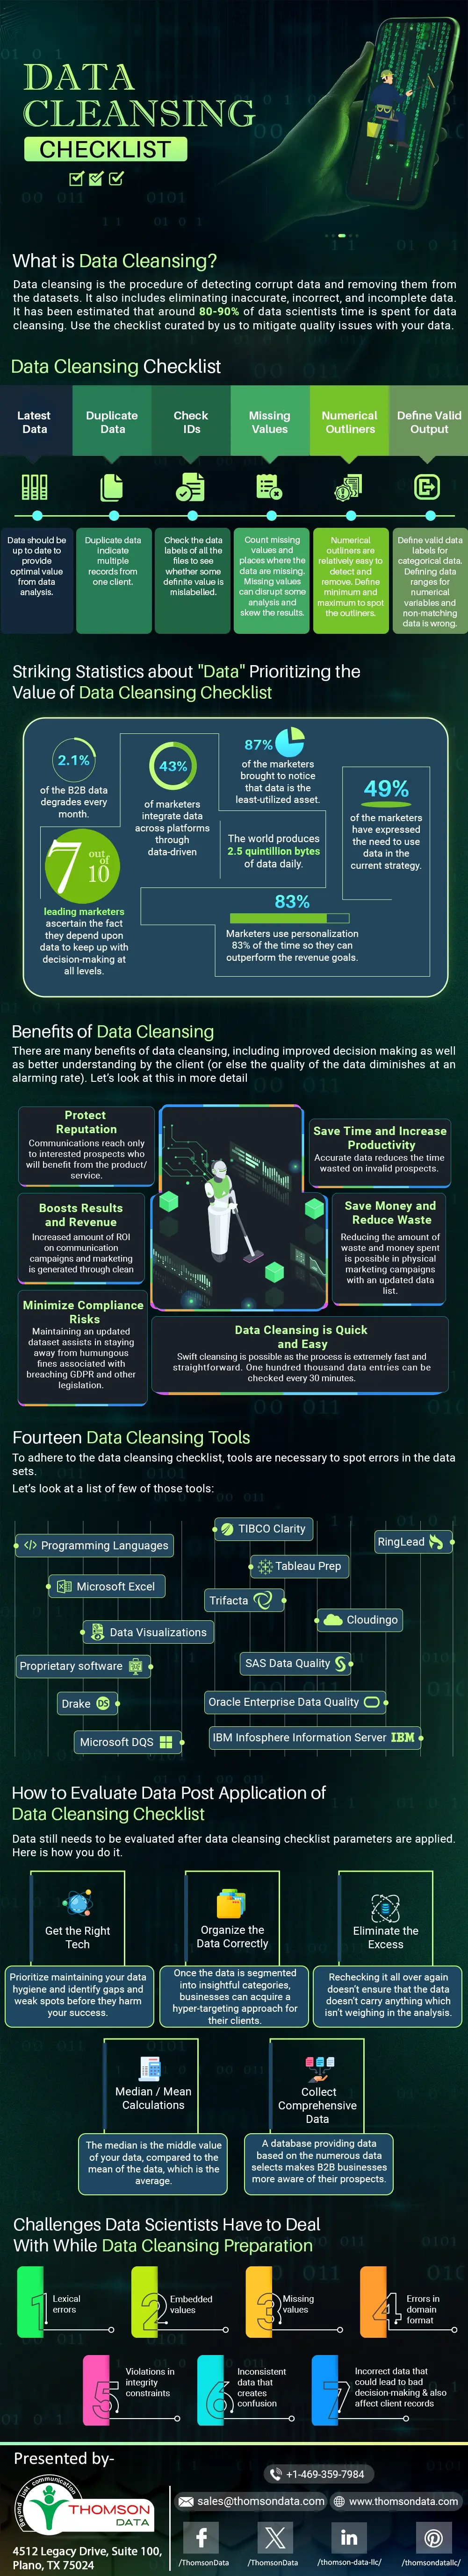 Data-Cleansing-Checklist